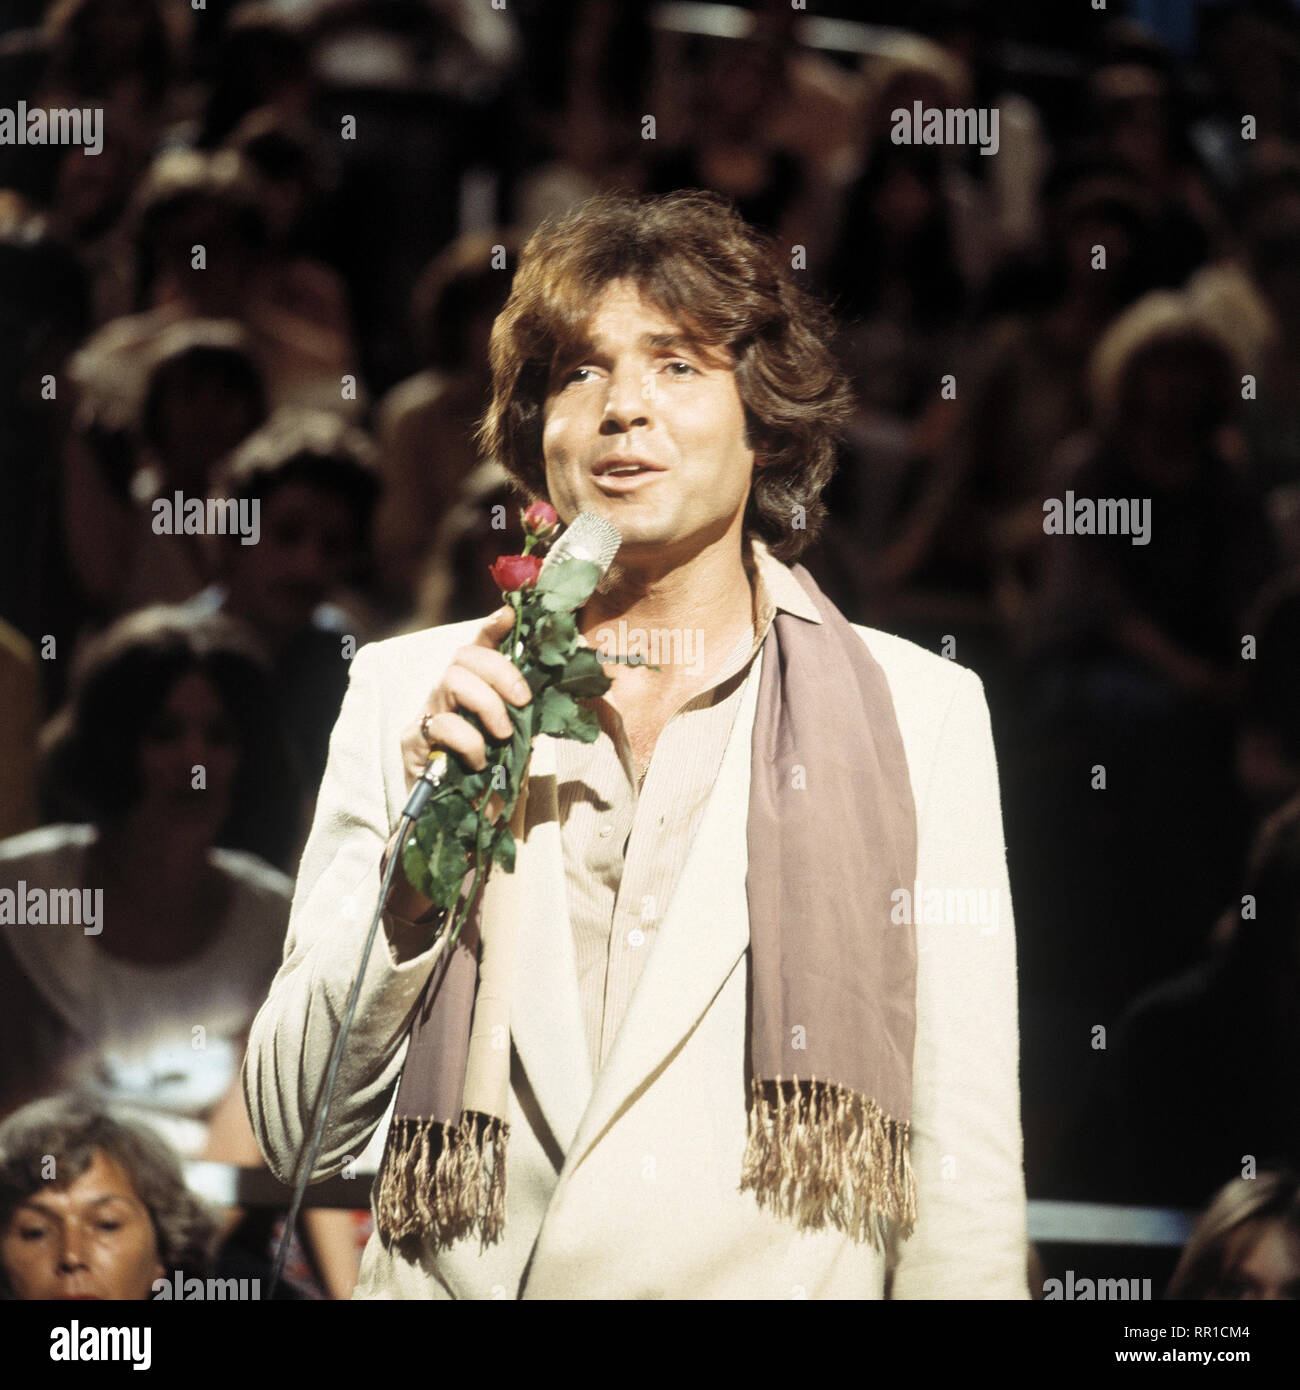 CHRIS ROBERTS bei einem Auftritt in den 1970er Jahren. / Überschrift: Chris Roberts Stock Photo